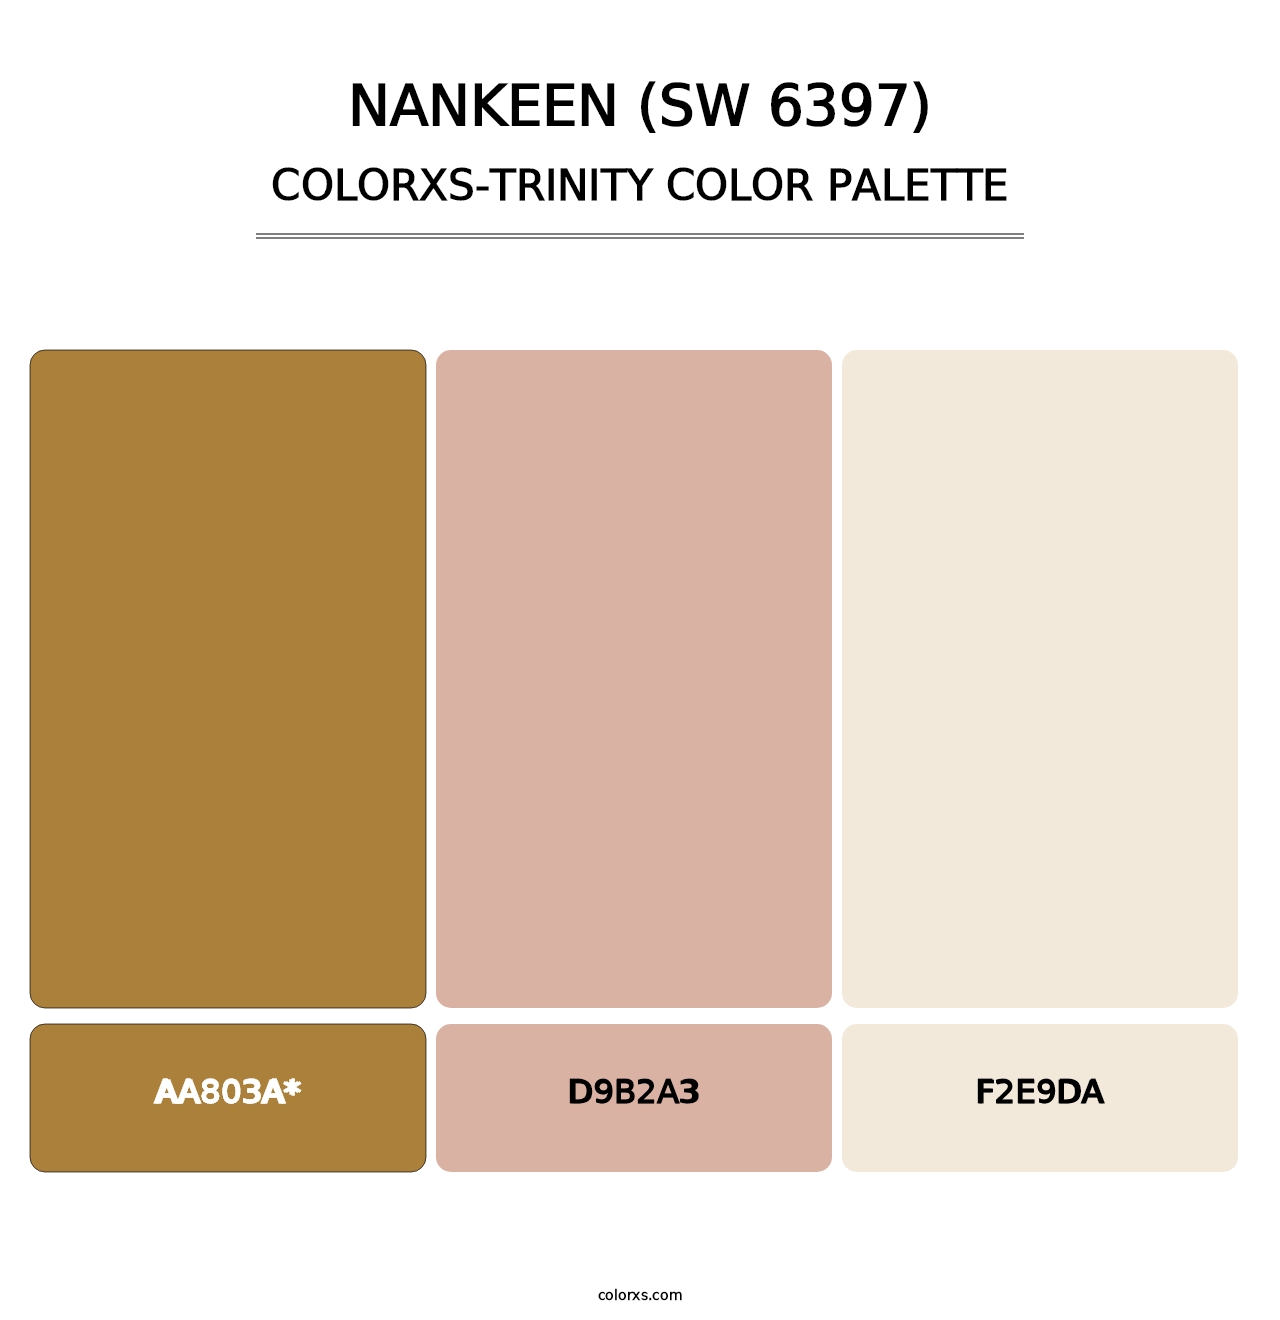 Nankeen (SW 6397) - Colorxs Trinity Palette